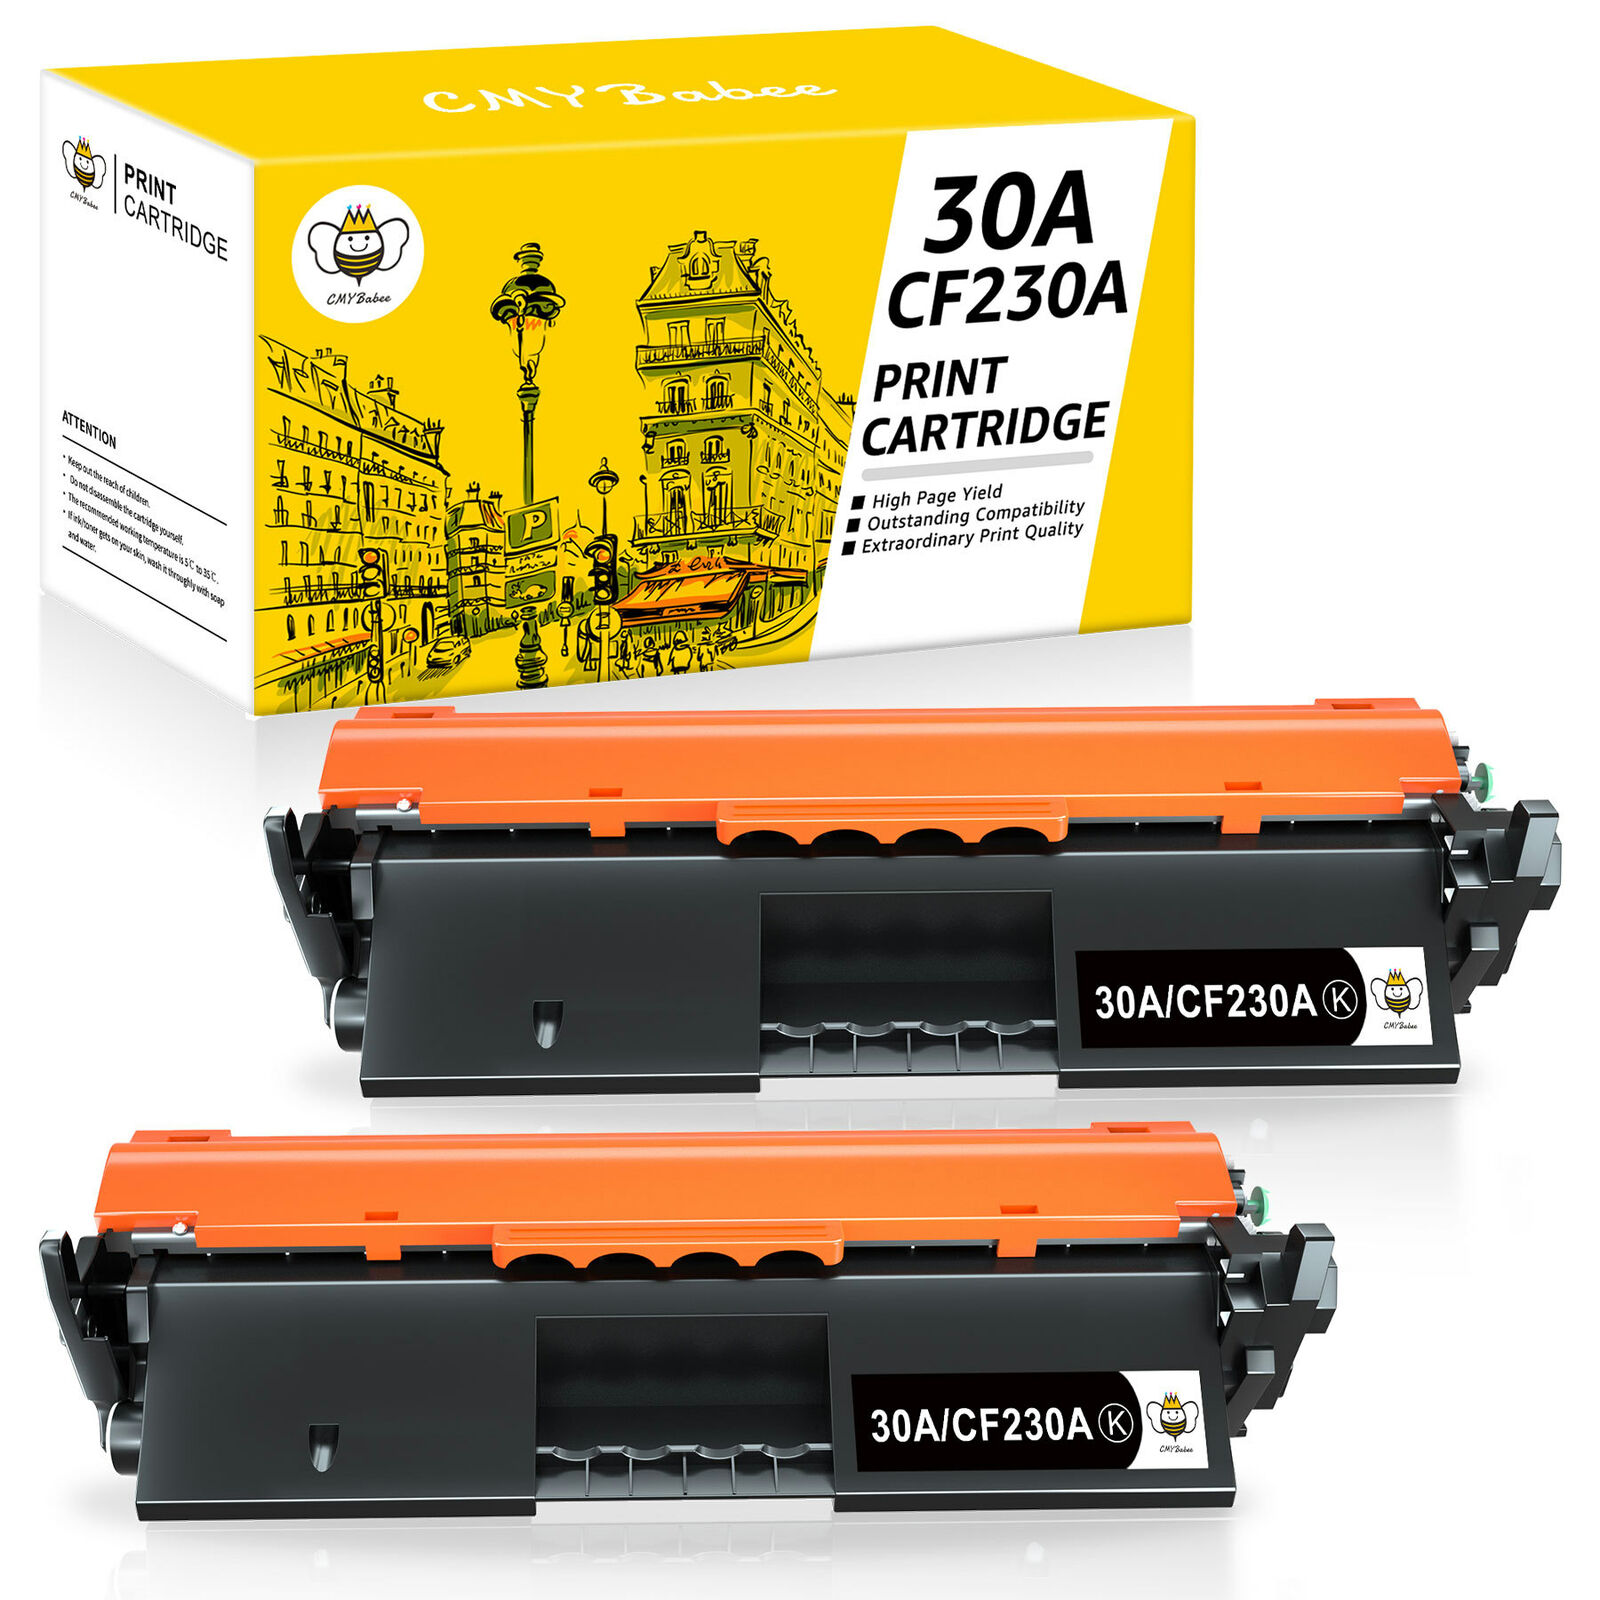 2 pk CF230A 30A Toner Cartridge for HP LaserJet Pro M203D M203DW MFP M227FDW